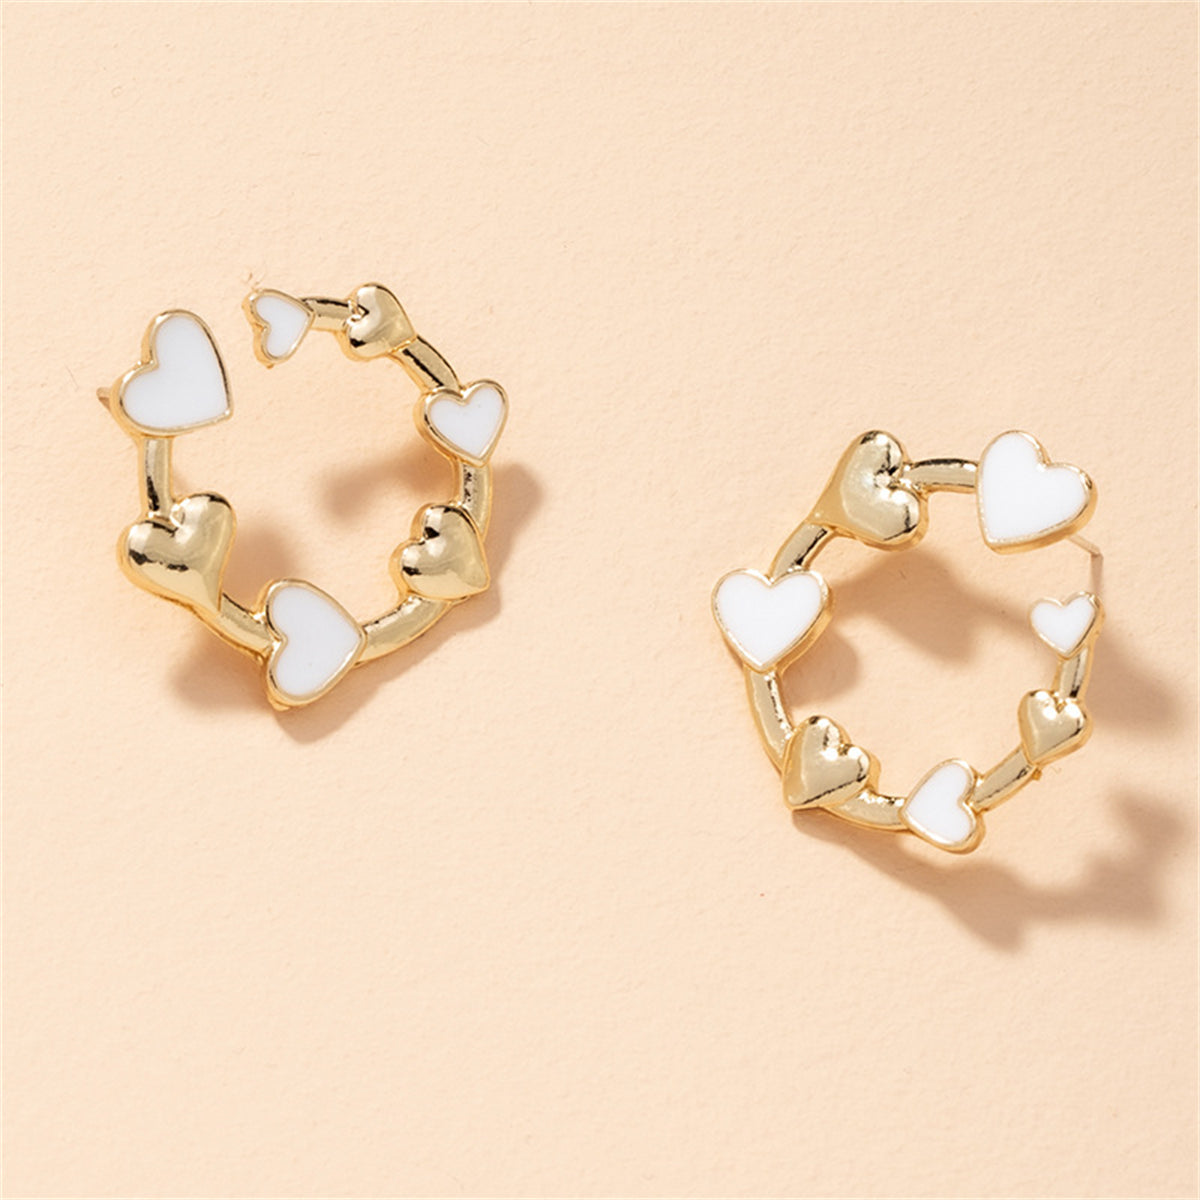 White Enamel & 18K Gold-Plated Heart Round Stud Earrings